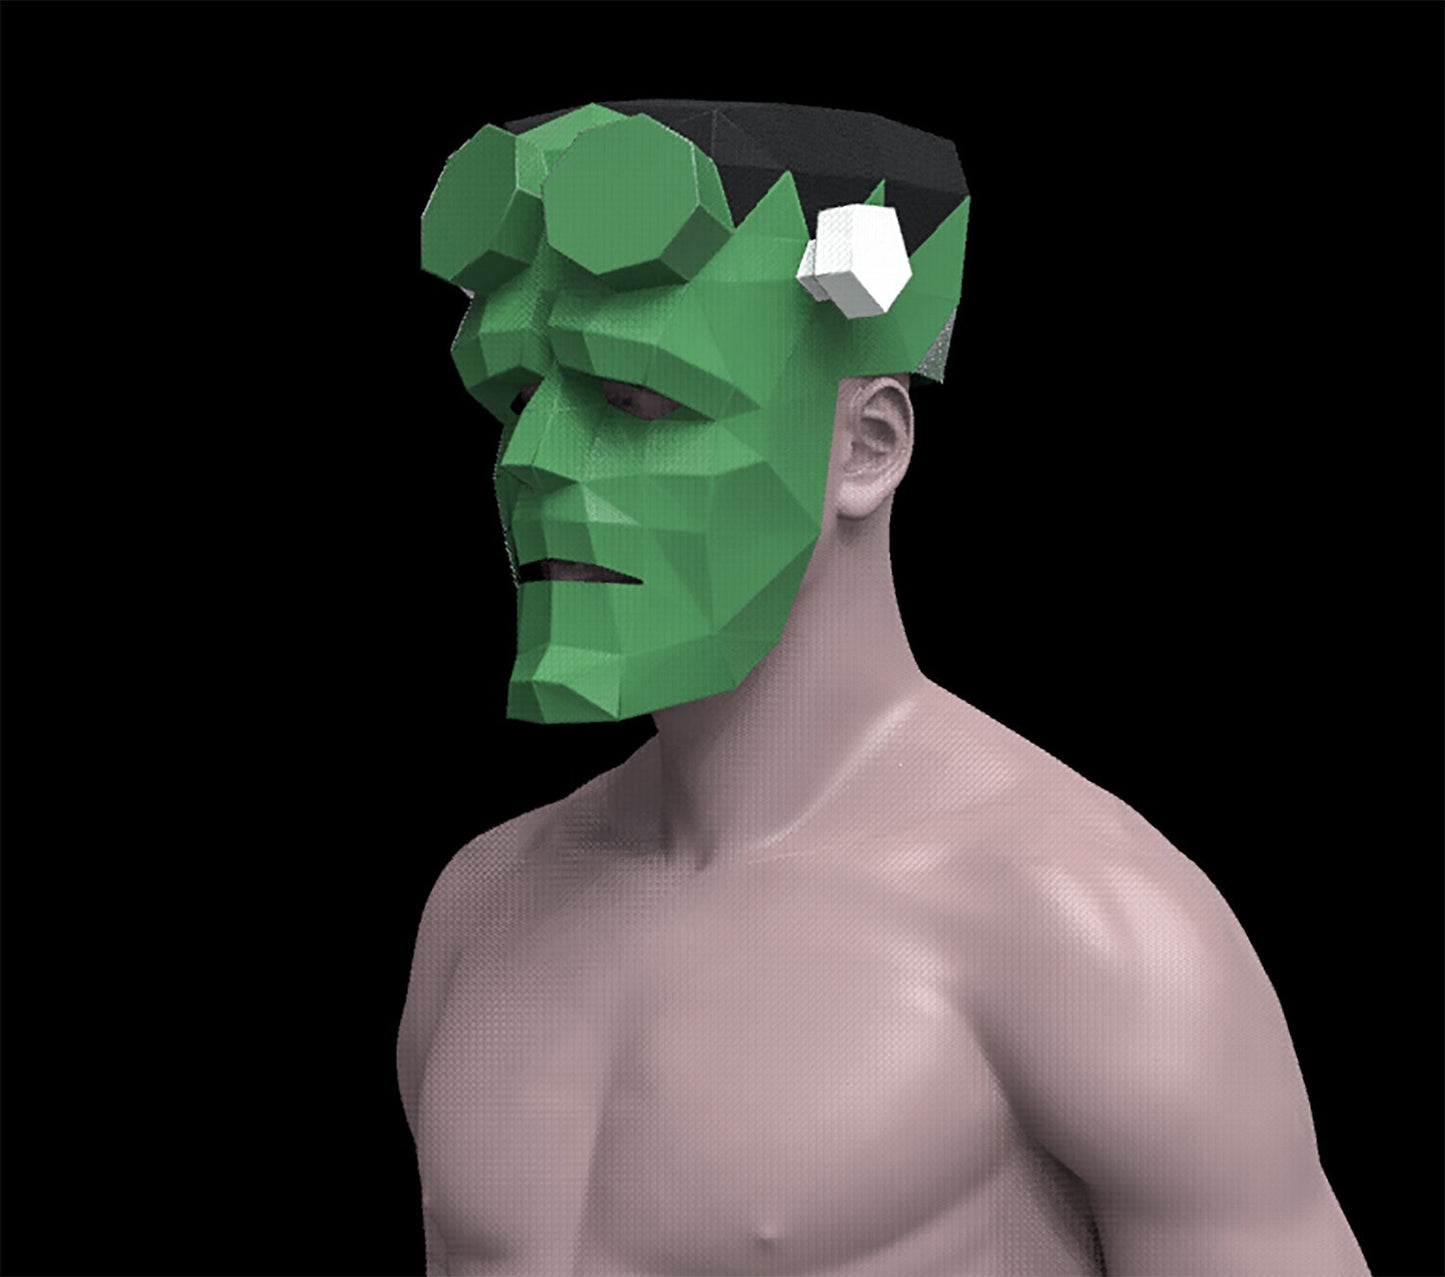 Frankenstein Hellboy mask